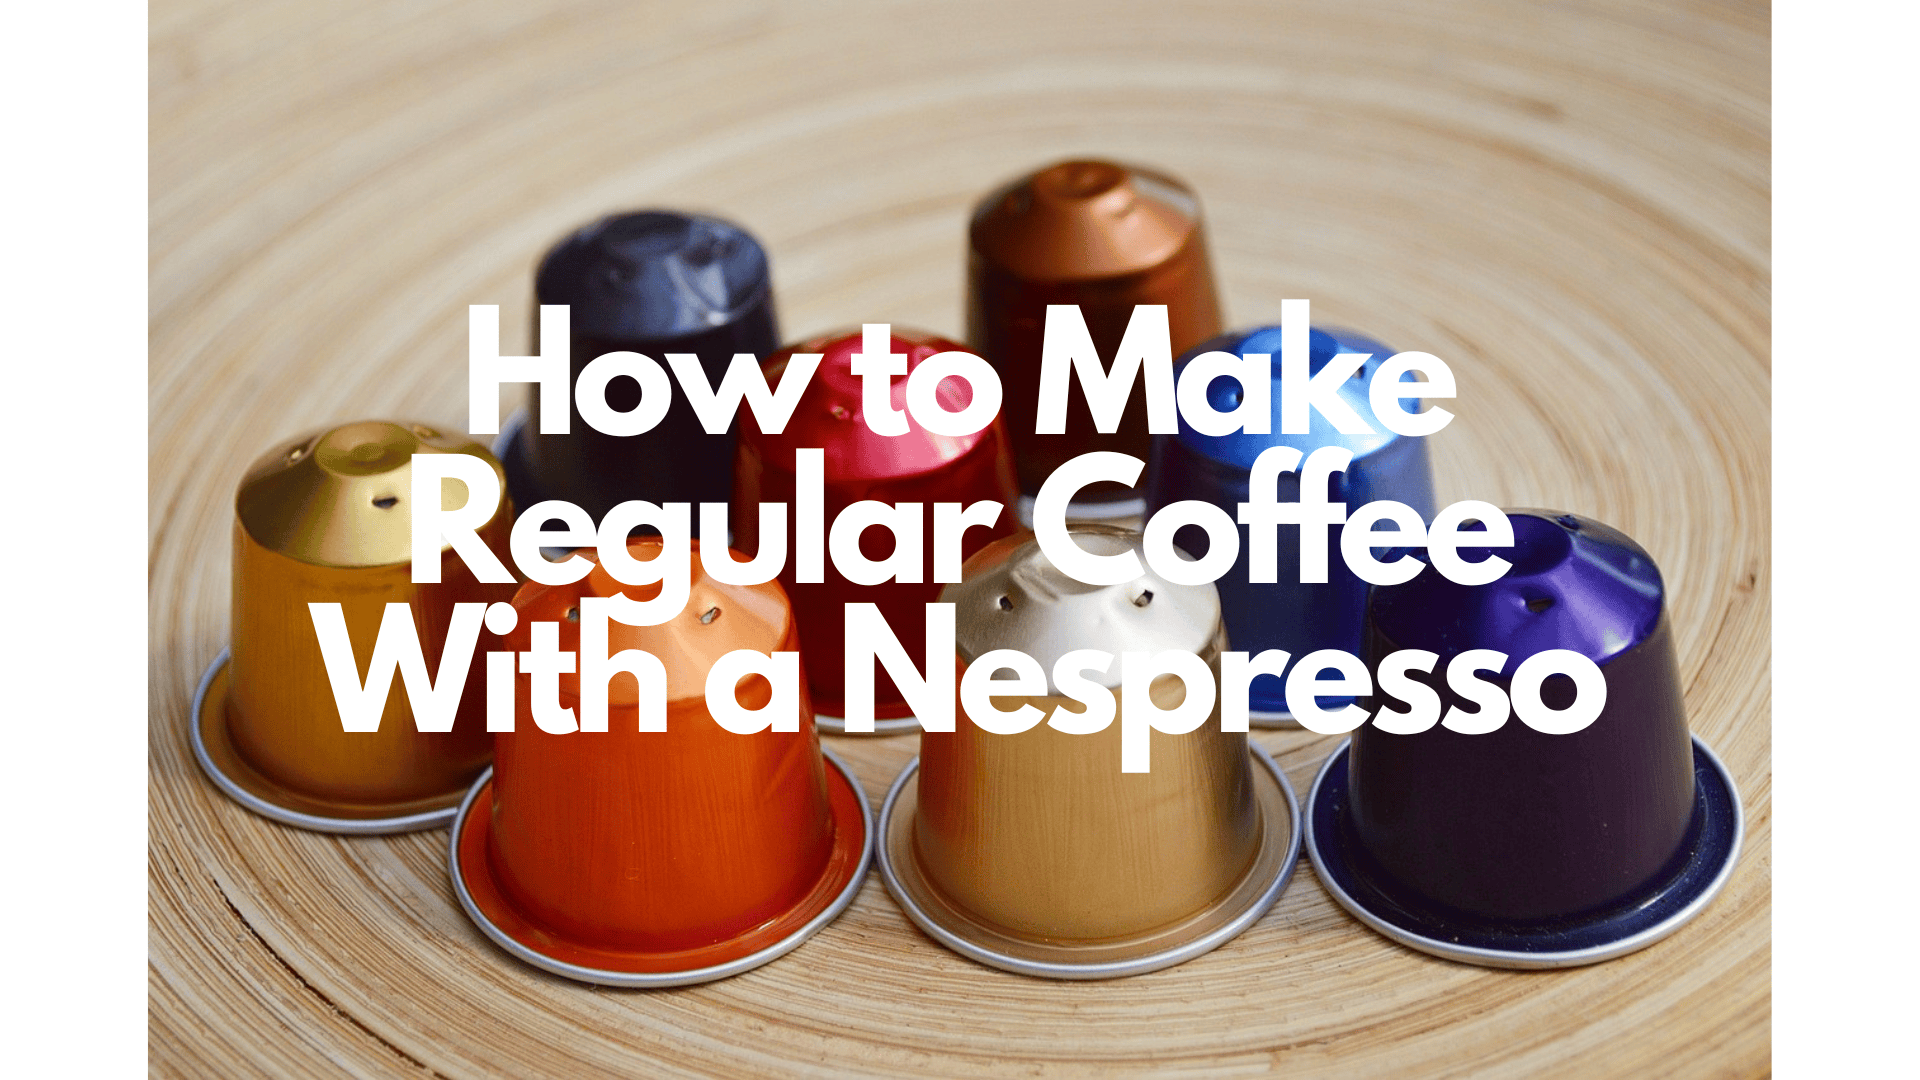 Nespresso Make Coffee? -